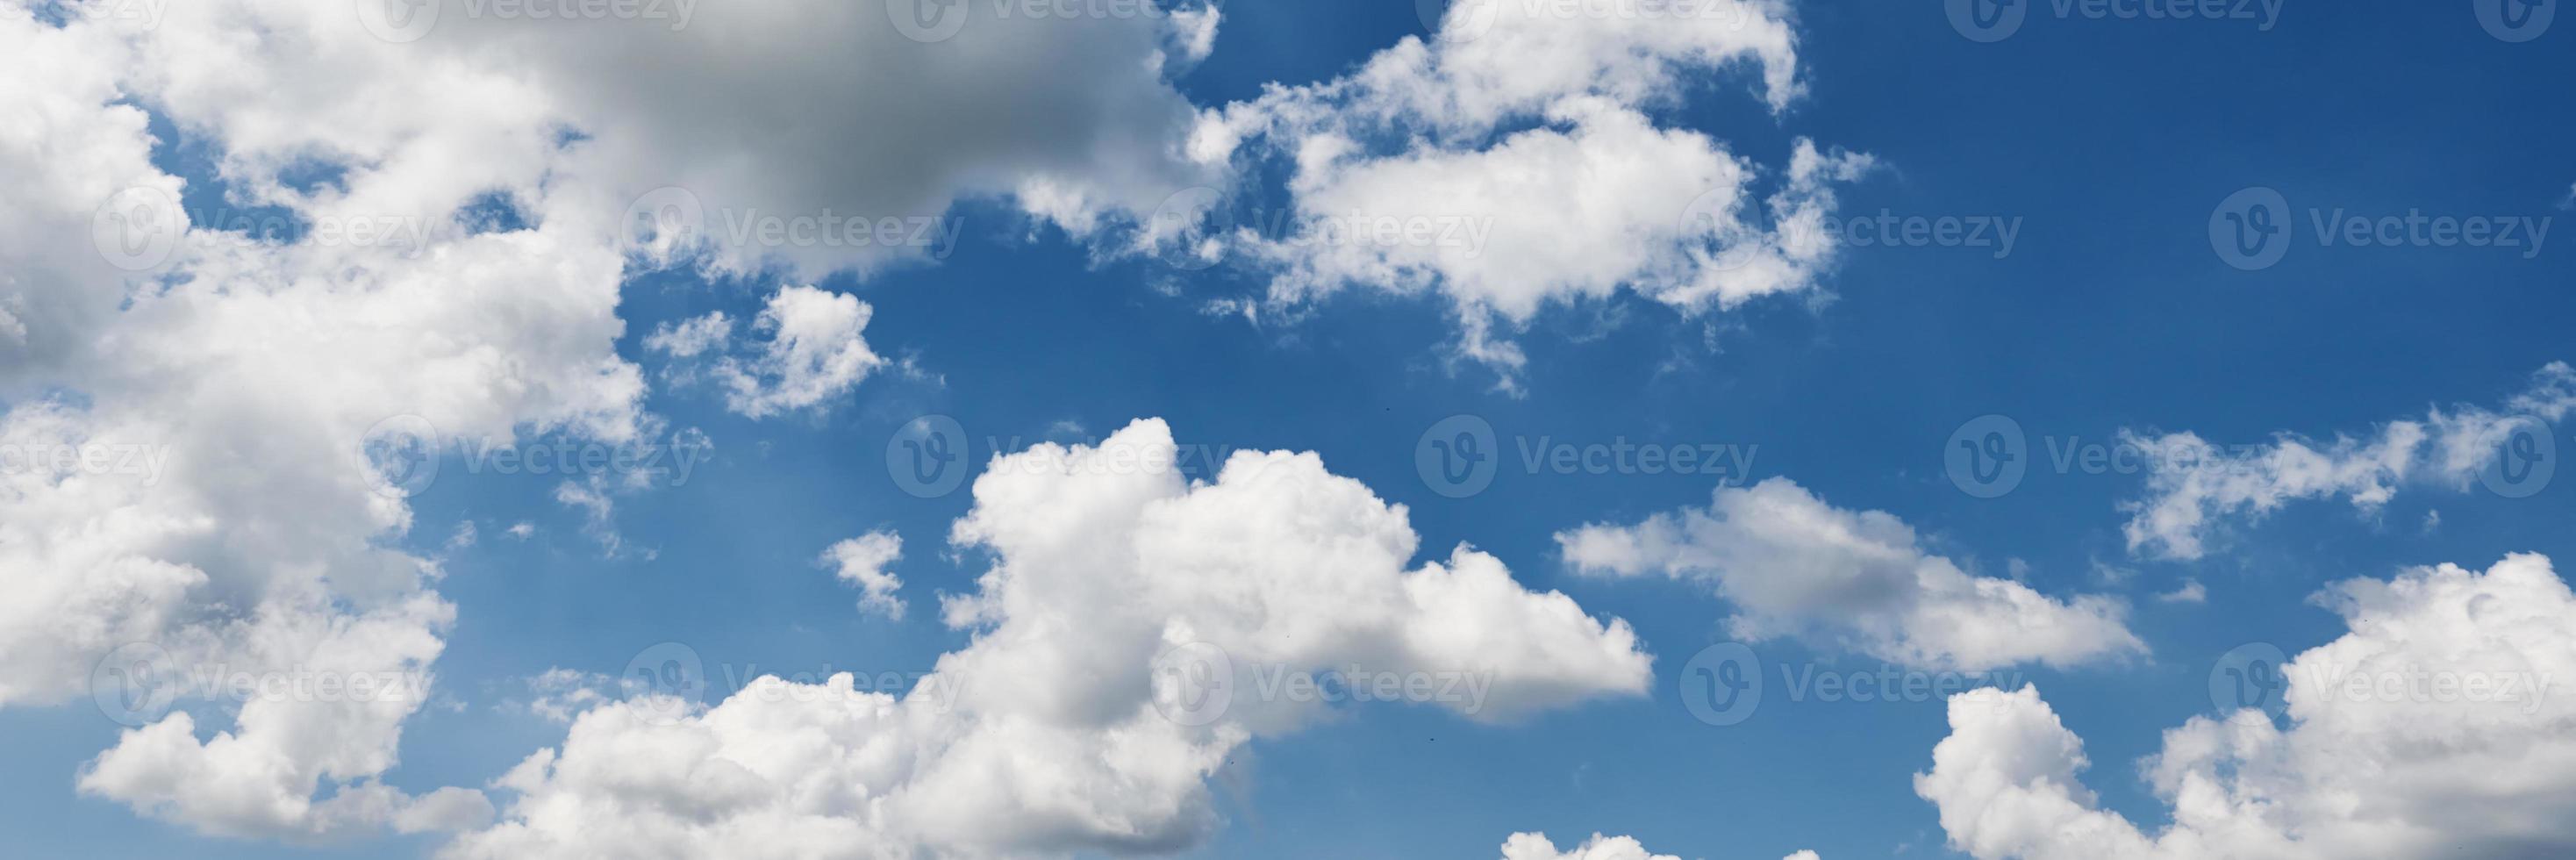 fond de ciel bleu avec des nuages en journée d'été. vue panoramique photo